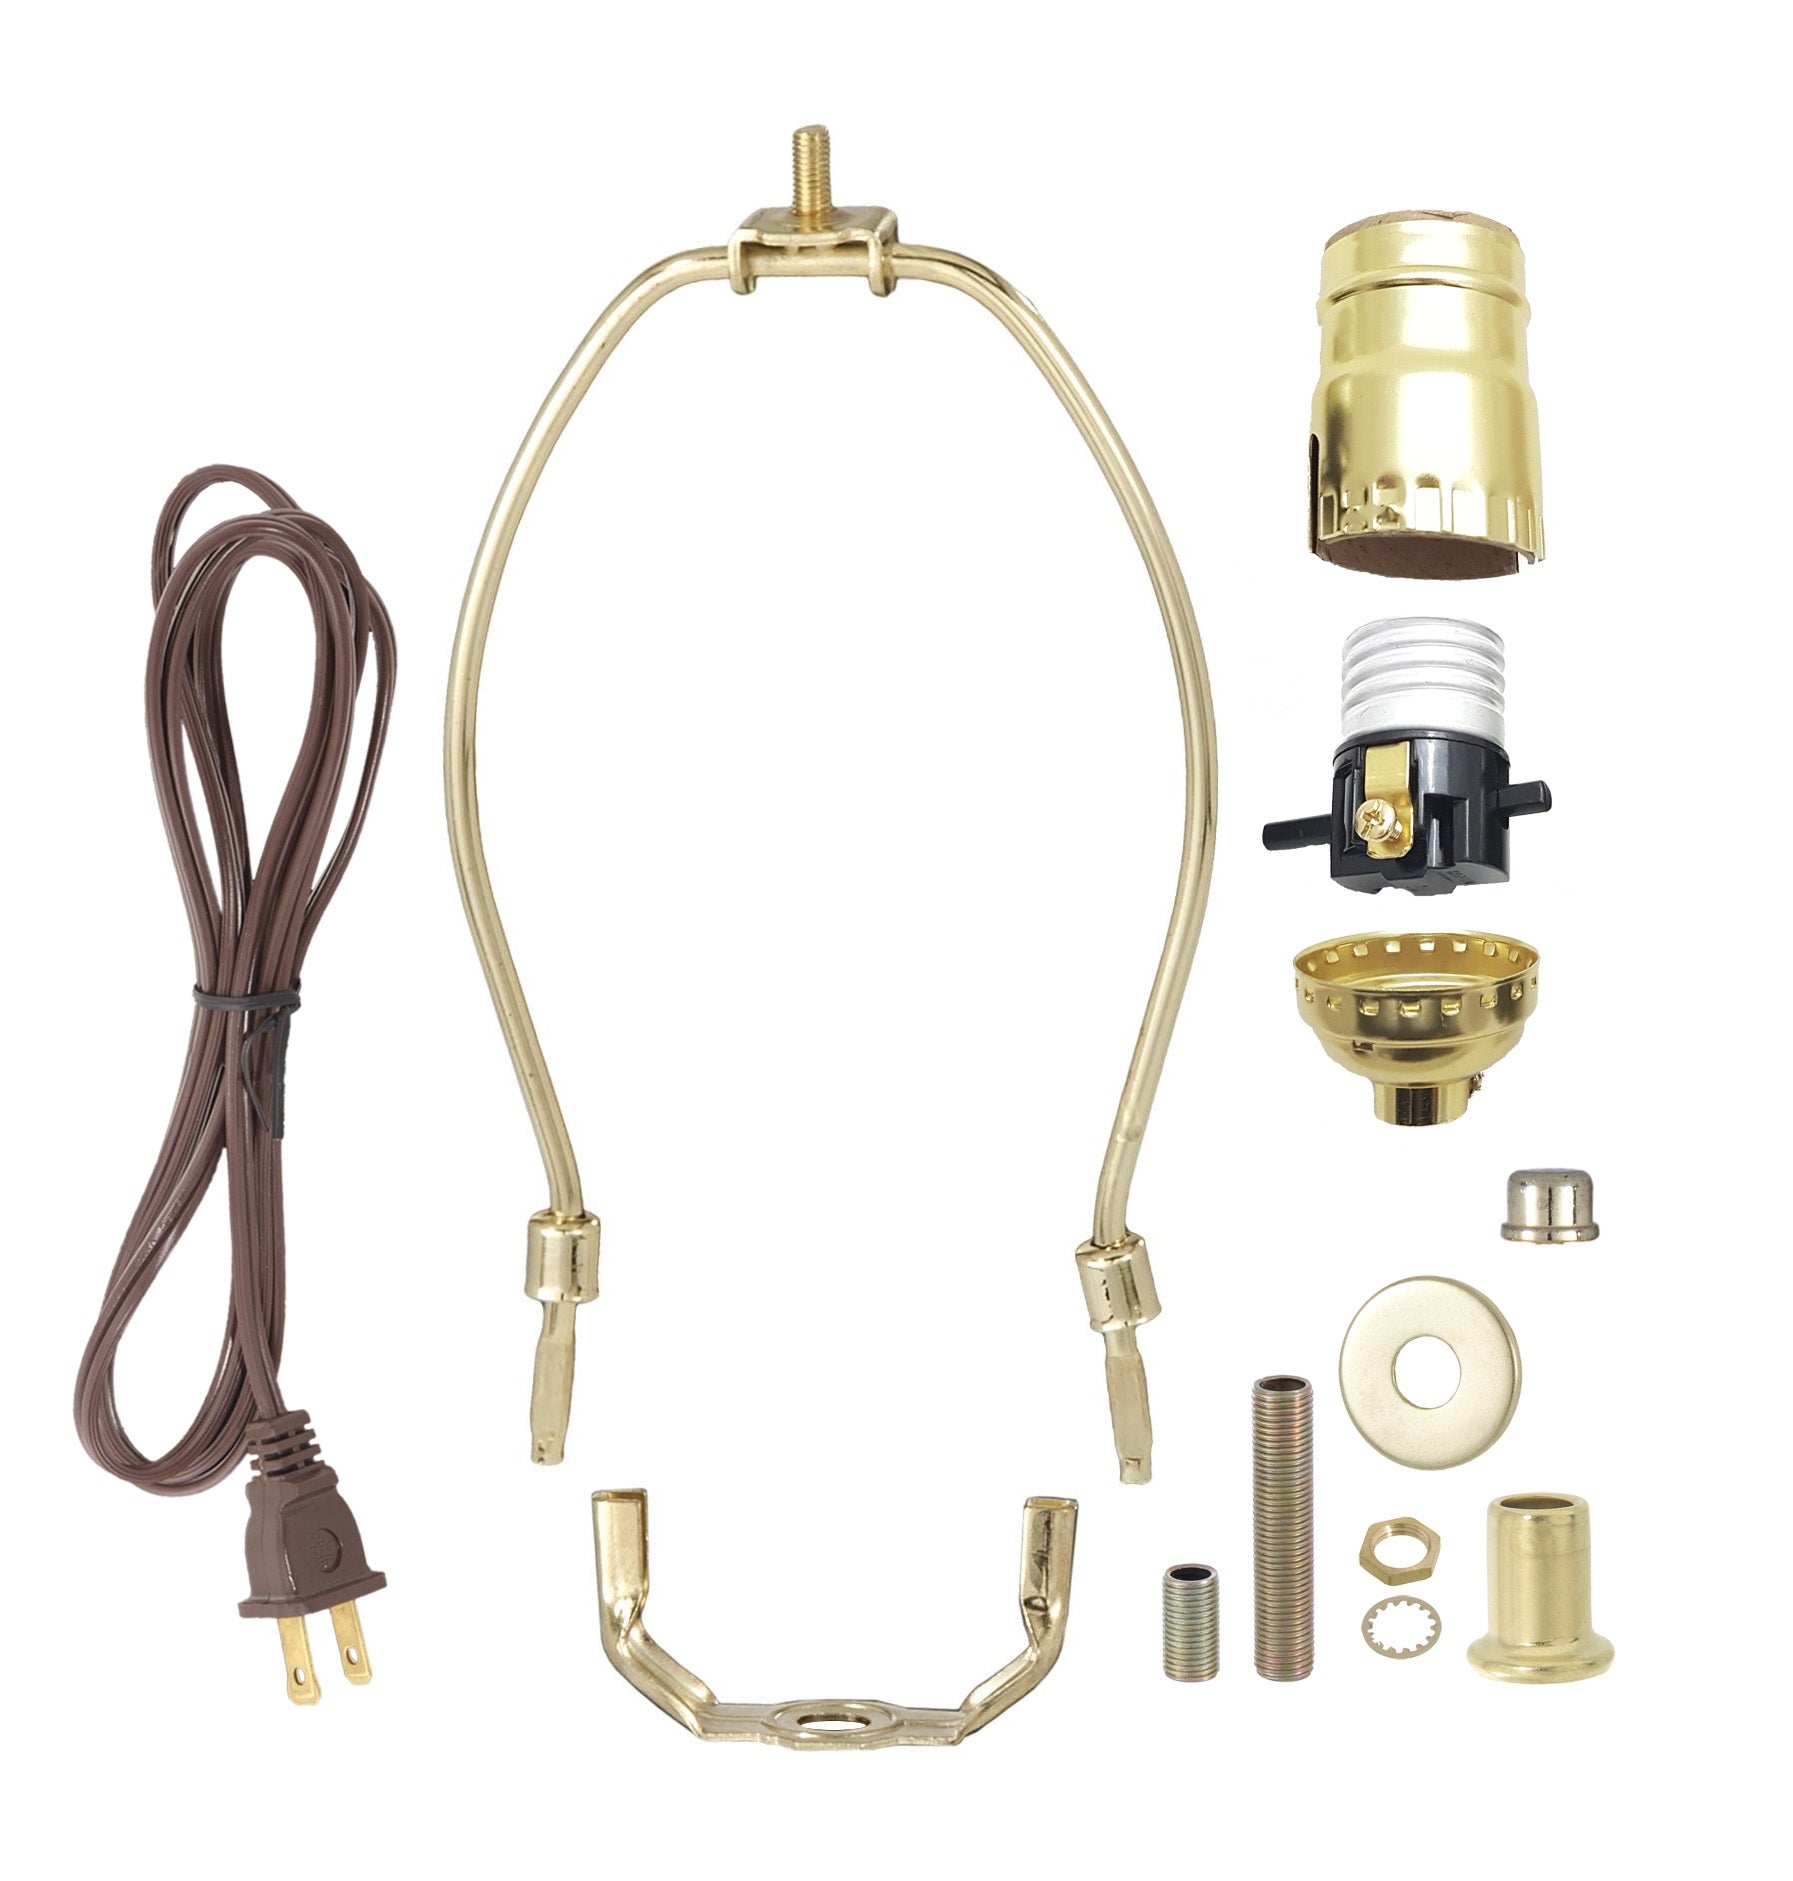 Chandelier Arm Rewire Kit - Clear Wire, 4 3/4 - 6 Socket